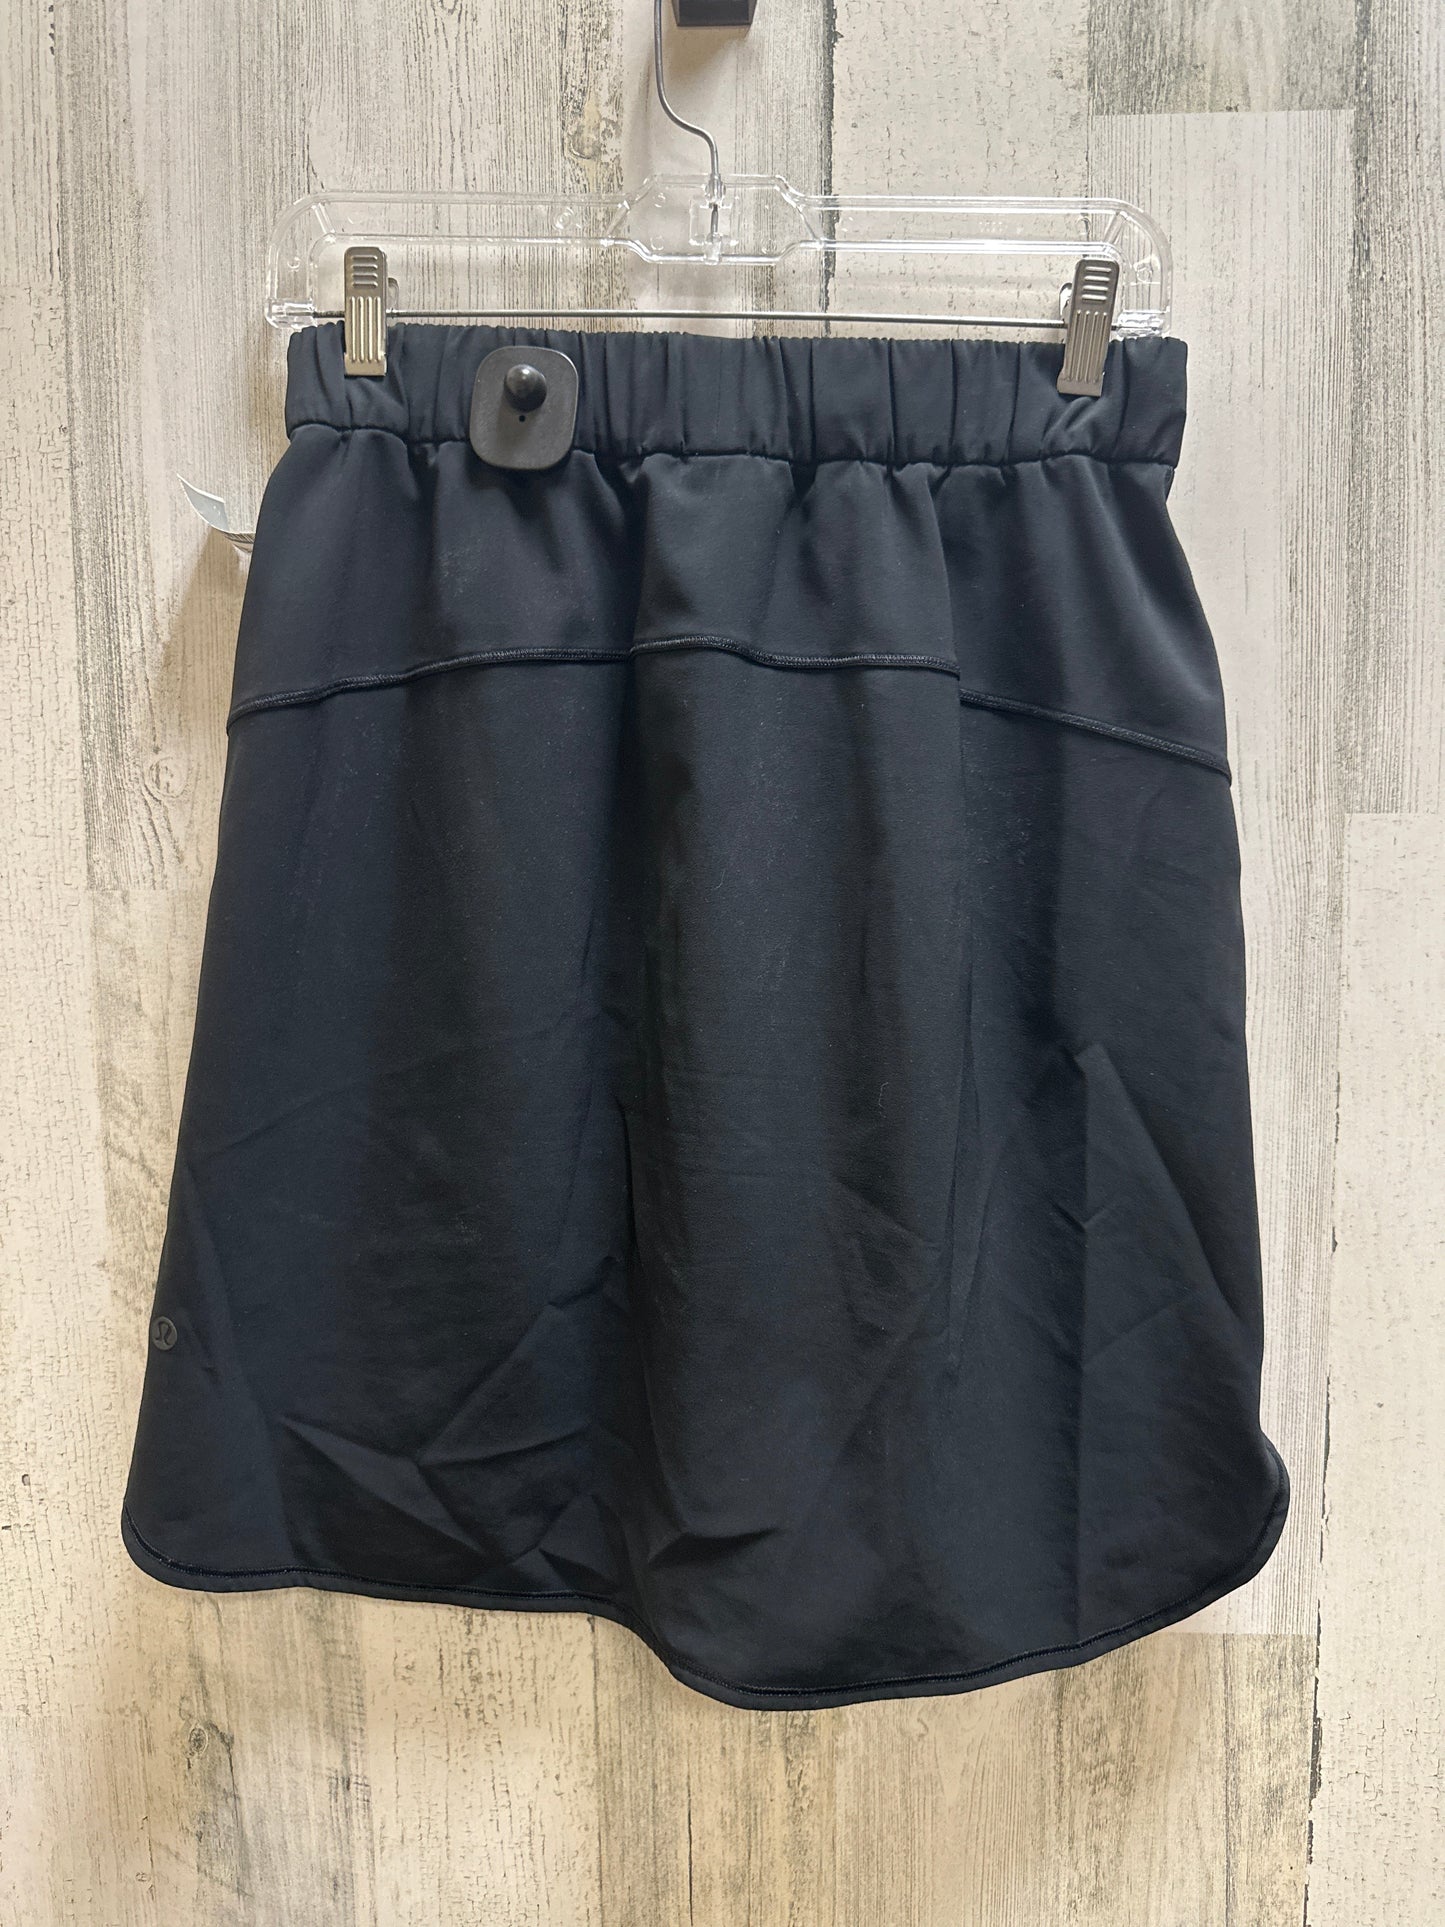 Black Athletic Skirt Lululemon, Size 6